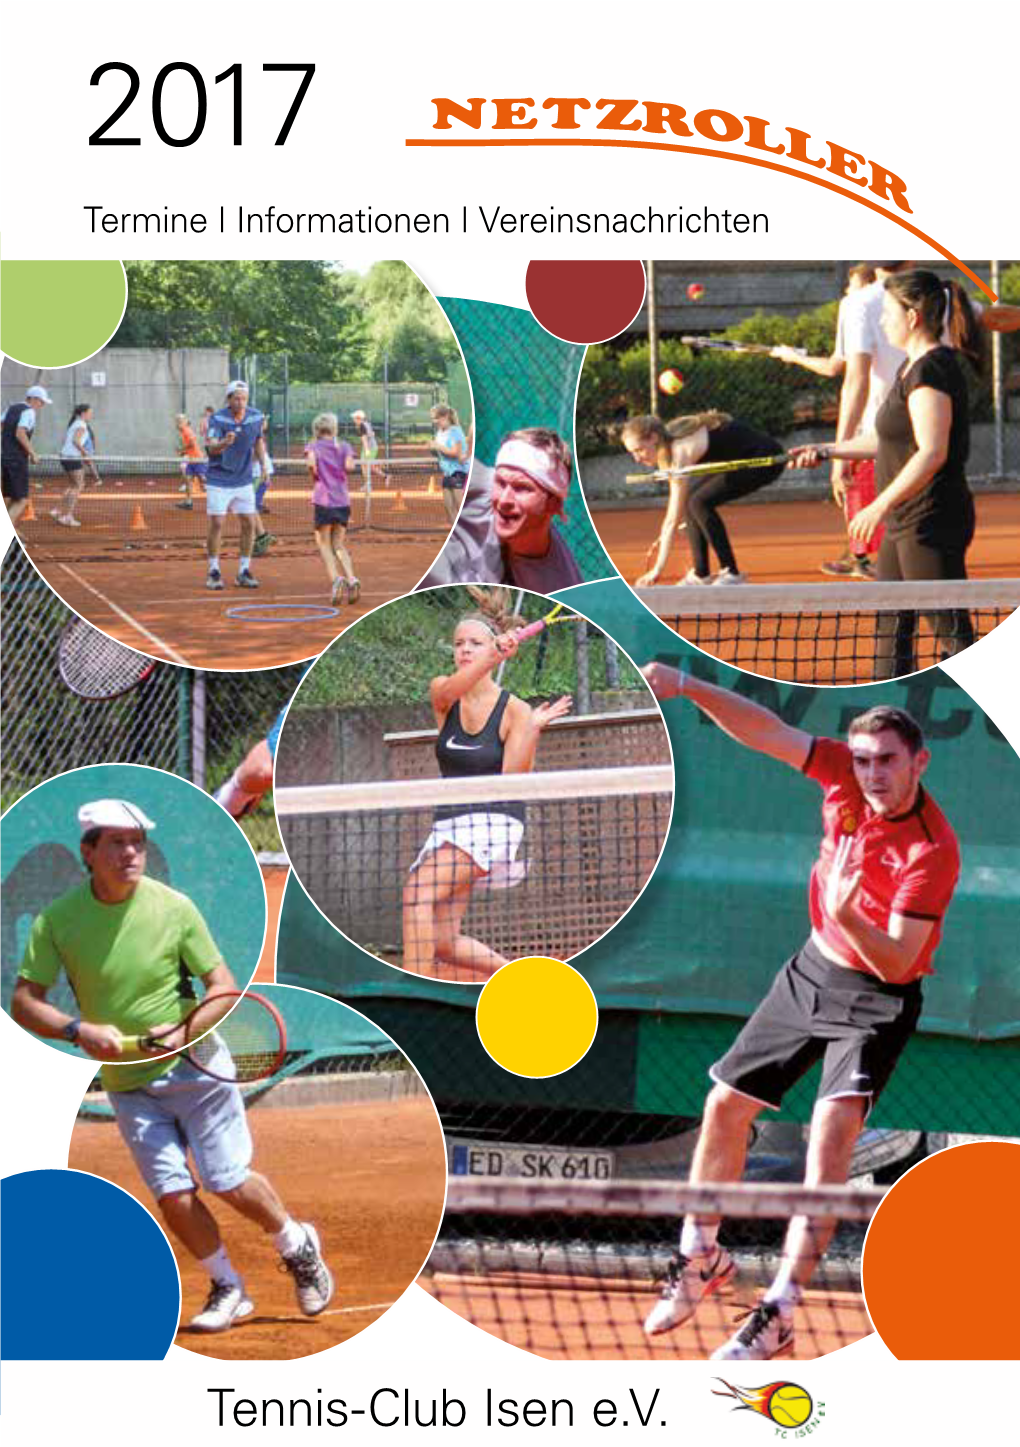 Tennis-Club Isen E.V. Wir Über Uns - on Court - Titelstory - Nachwuchs - Mixed-Zone